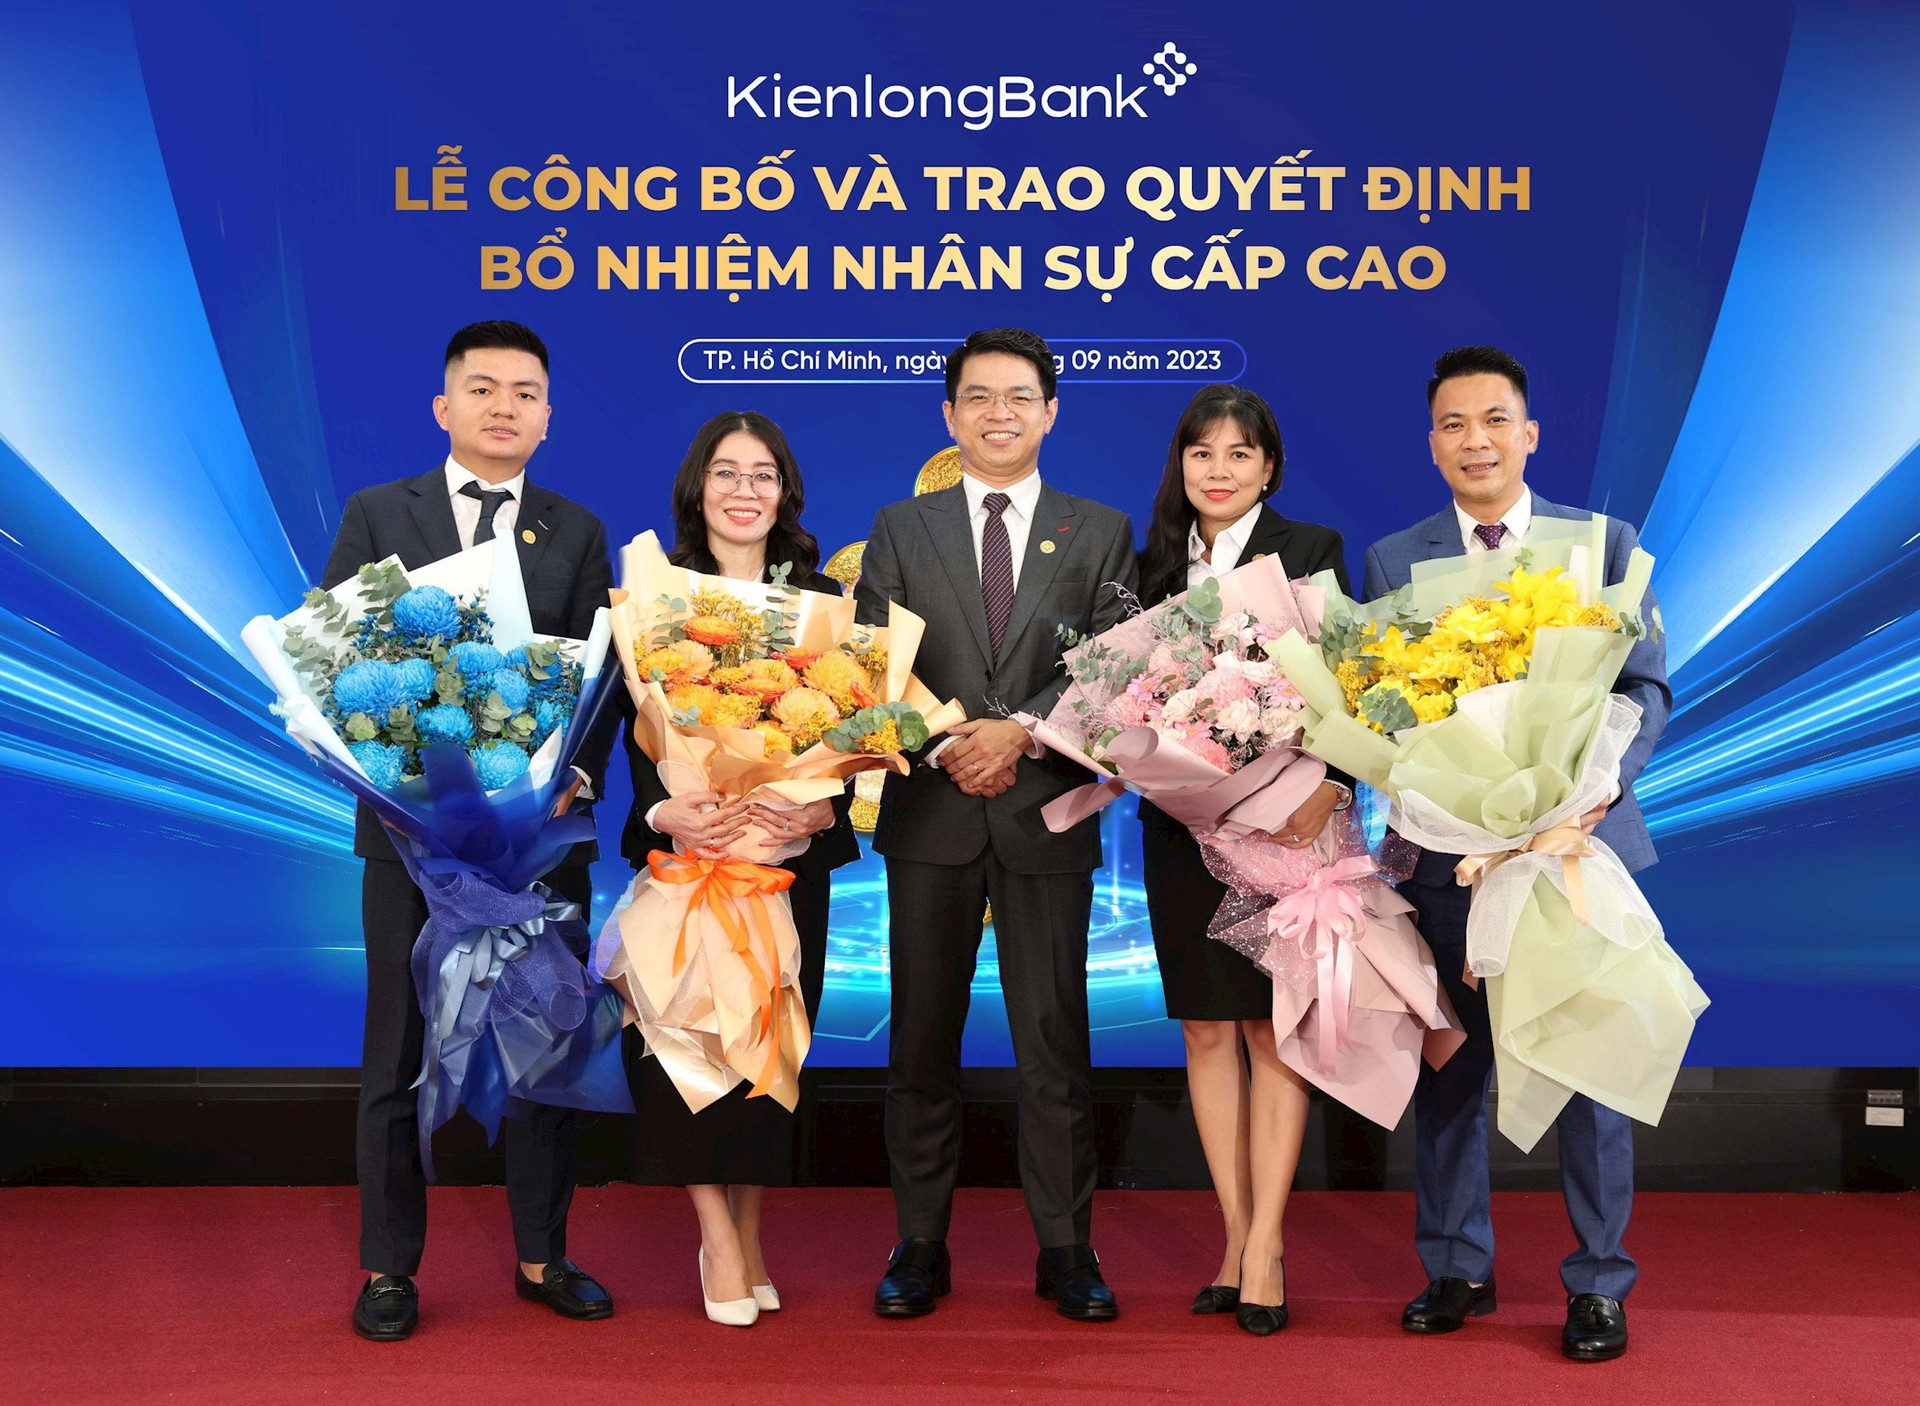 KienlongBank bổ nhiệm mới 1 Phó Tổng giám đốc và 2 nhân sự cấp cao khác - Ảnh 1.